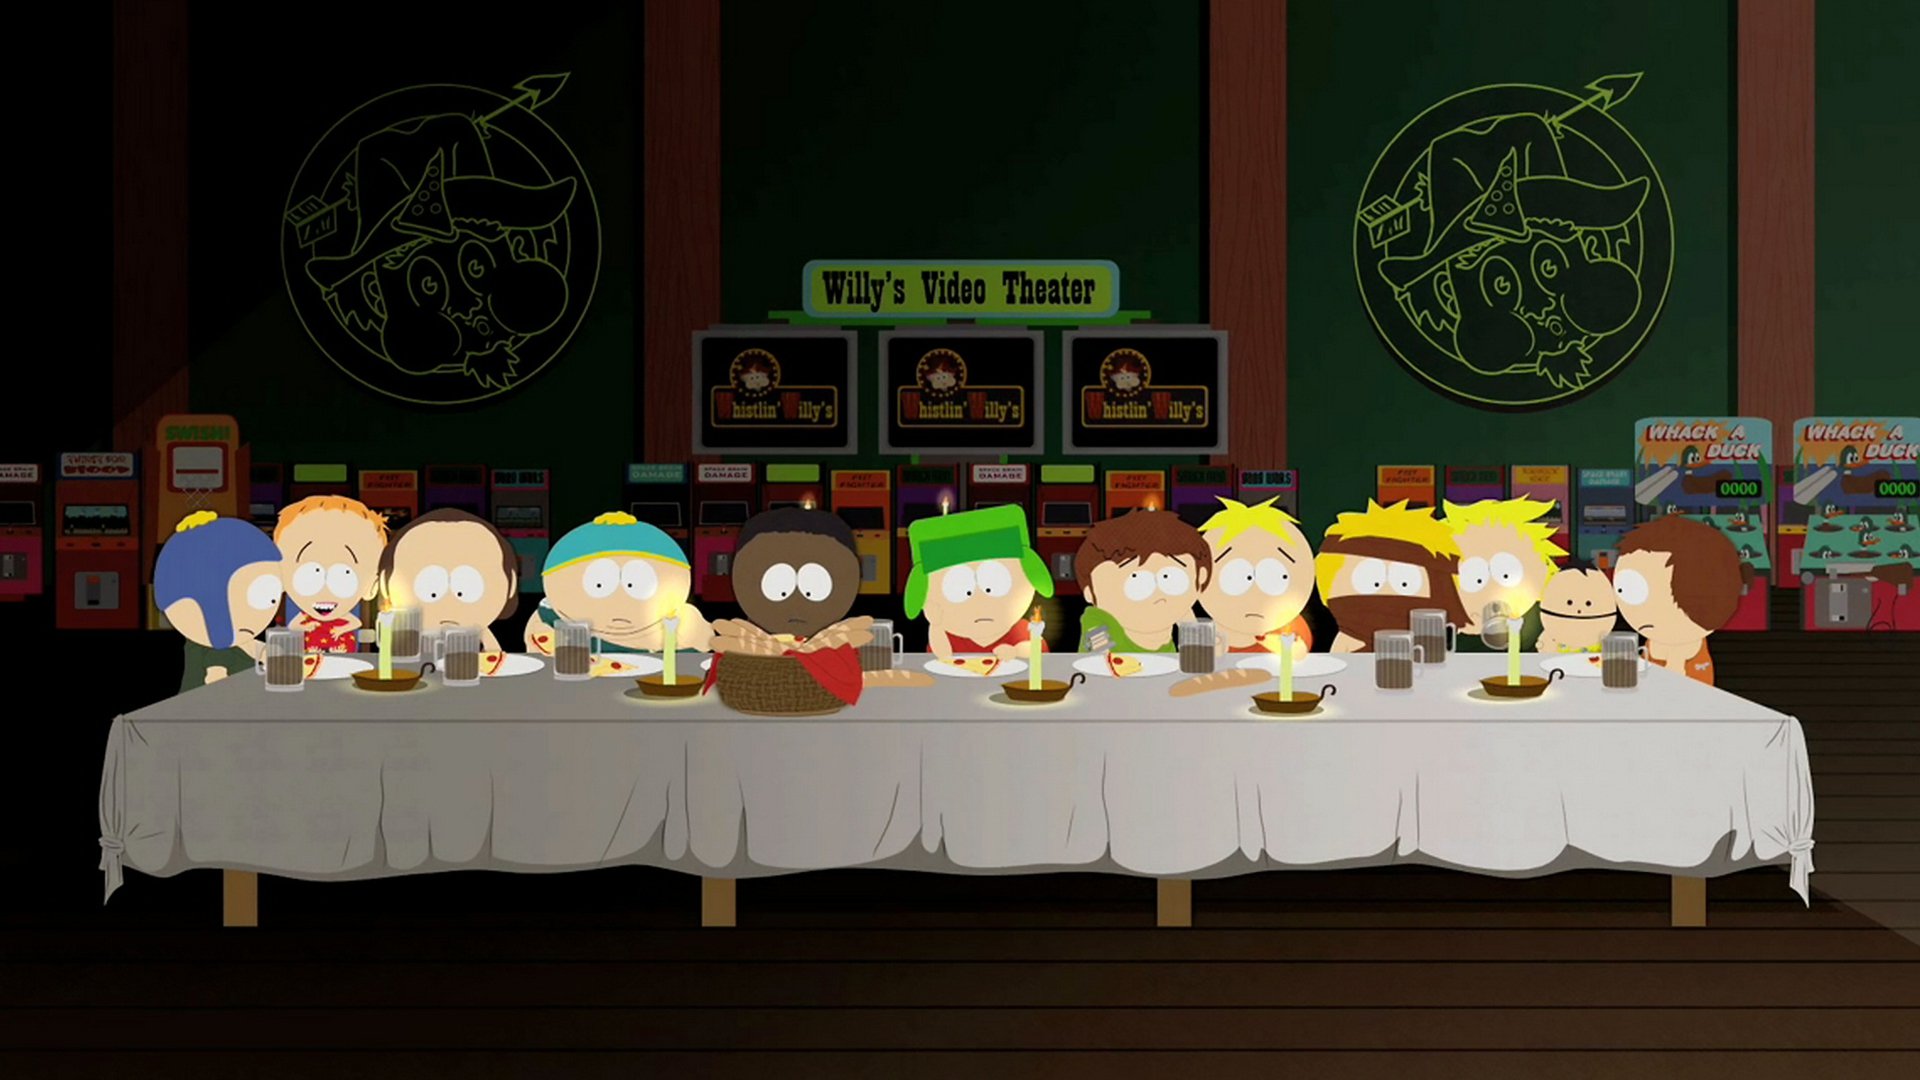 Séries TV South Park Fond d'écran HD | Image